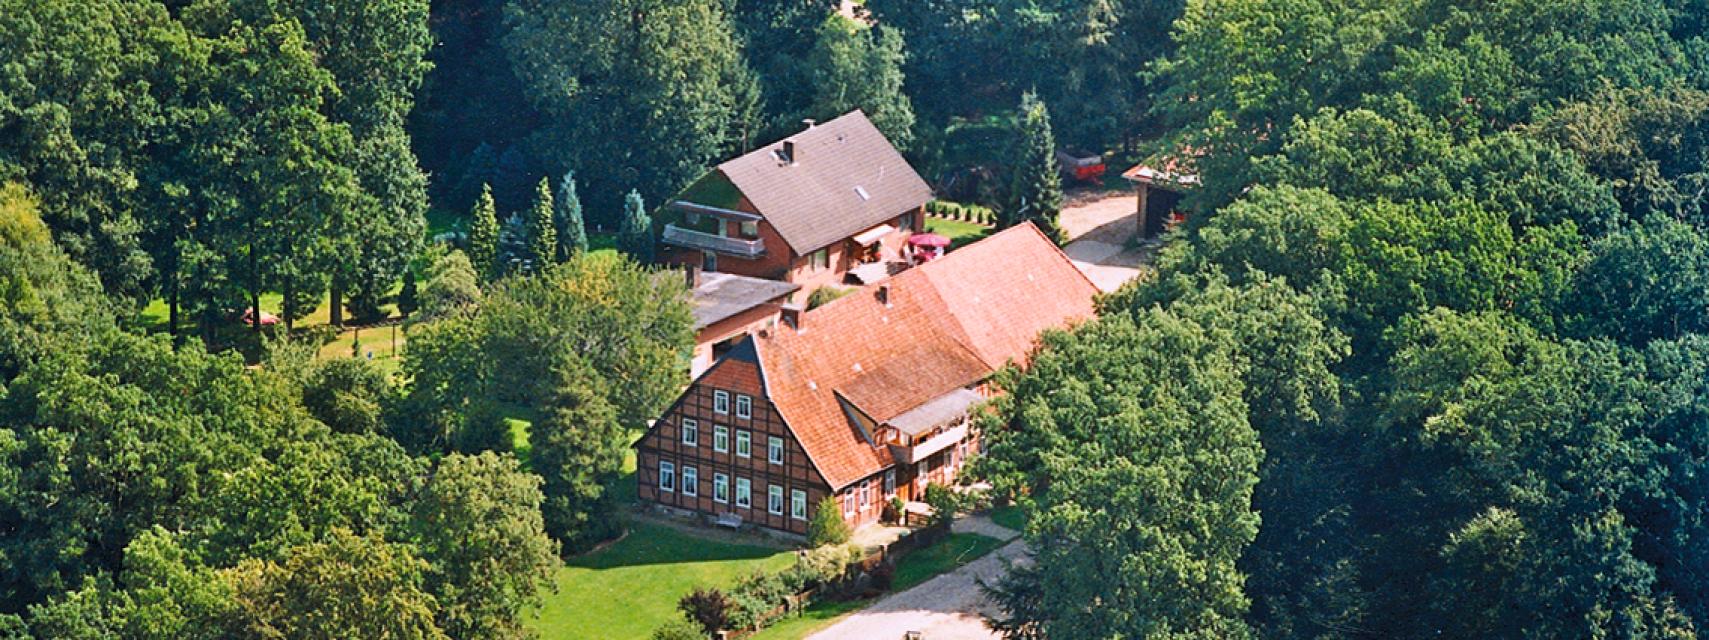 Im Zentrum der Südheide liegt das idyllische Bommelsen. Unser erstmals 835 urkundlich erwähnter Meyernhof – ein Vollerwerbshof – ist arrondiert gelegen mit weitläufigem Waldbestand.Ausstattung:Insgesamt steht 1 geschmackvoll und komfortabel eingerichtete Ferienwohnung, ca. 90 qm, für 4...